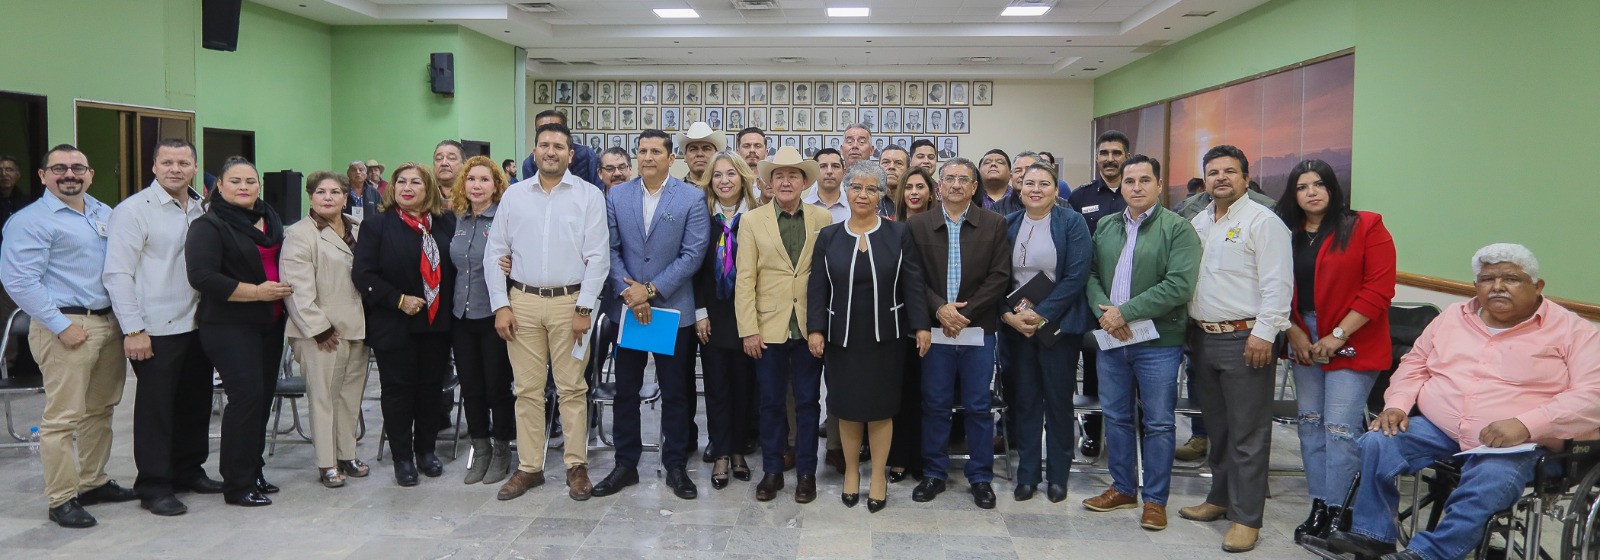 Realizan Parlamento Abierto para reformas de ley en Sonora